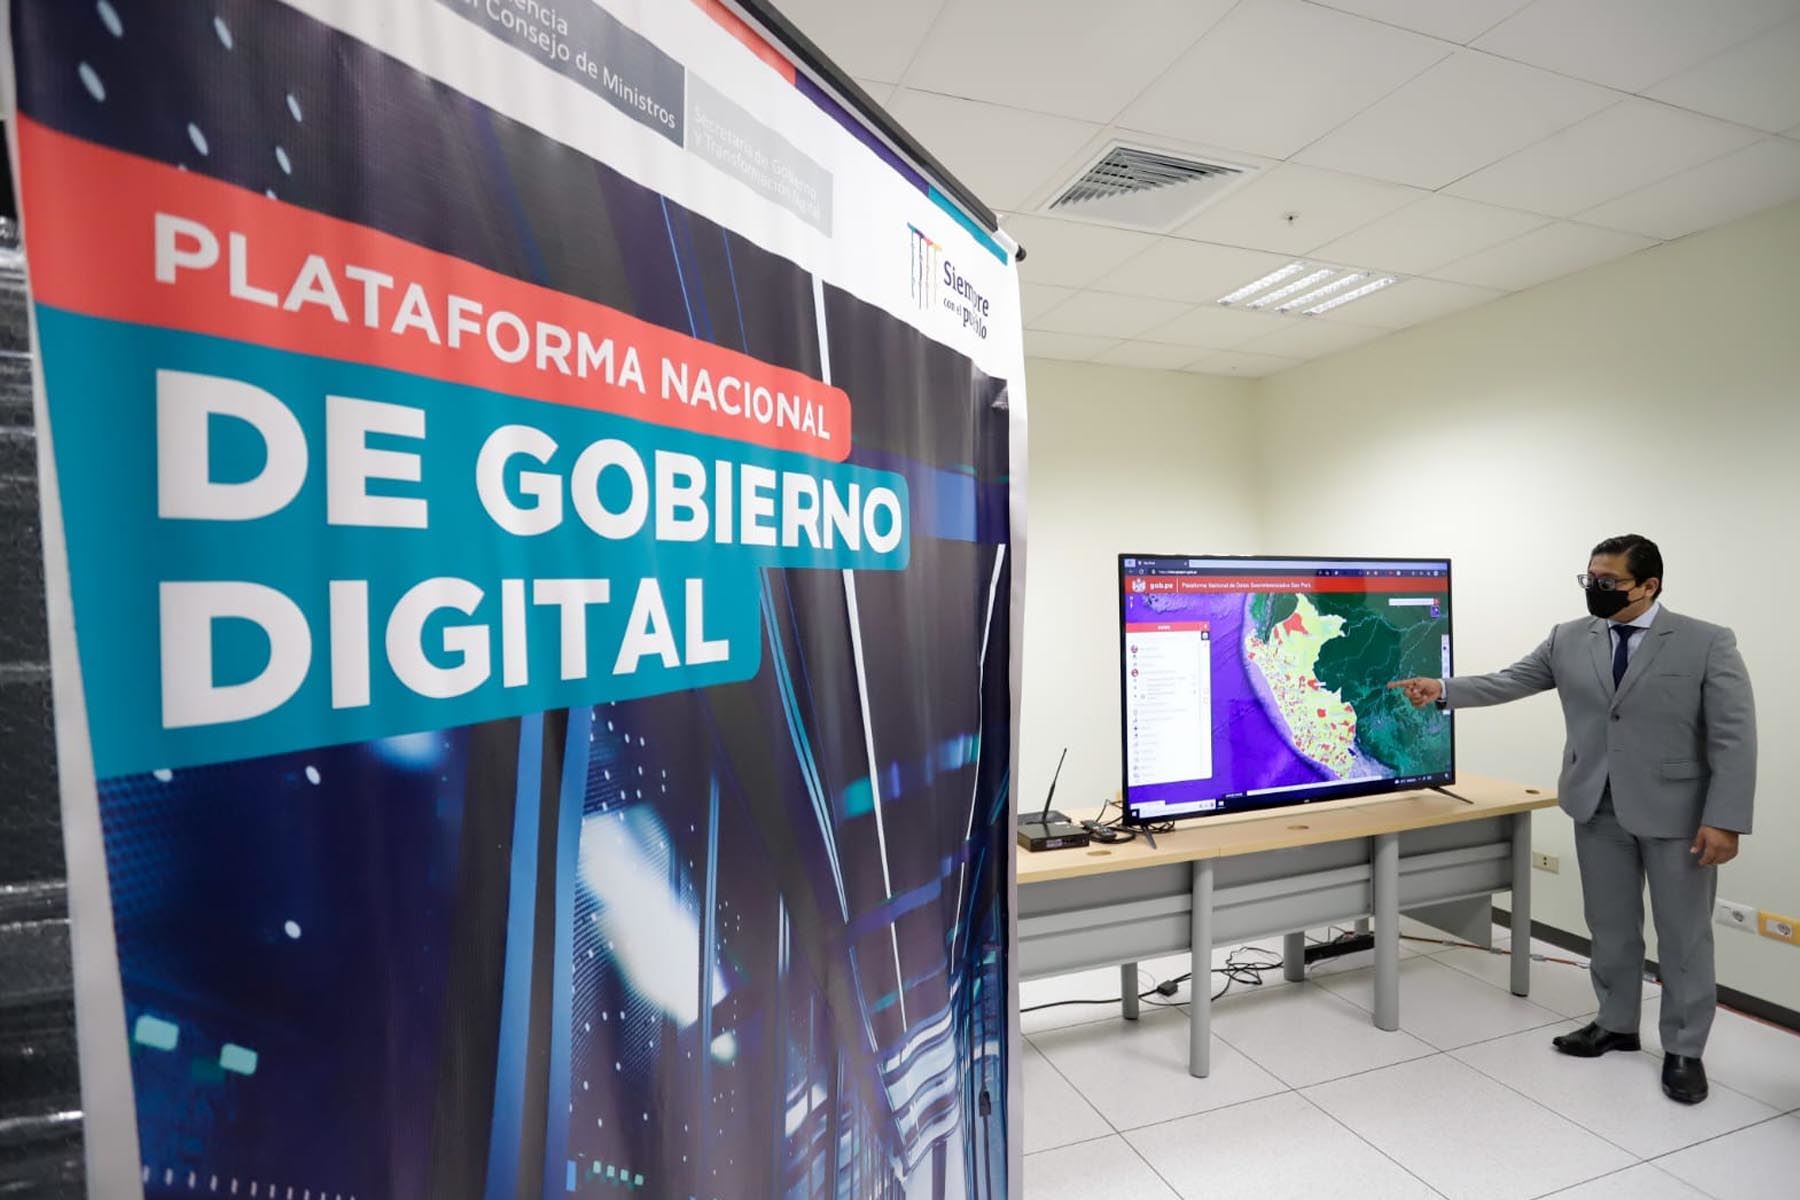 La Plataforma Nacional de Gobierno Digital está implementada en el Data Center del Banco de la Nación. Foto: PCM